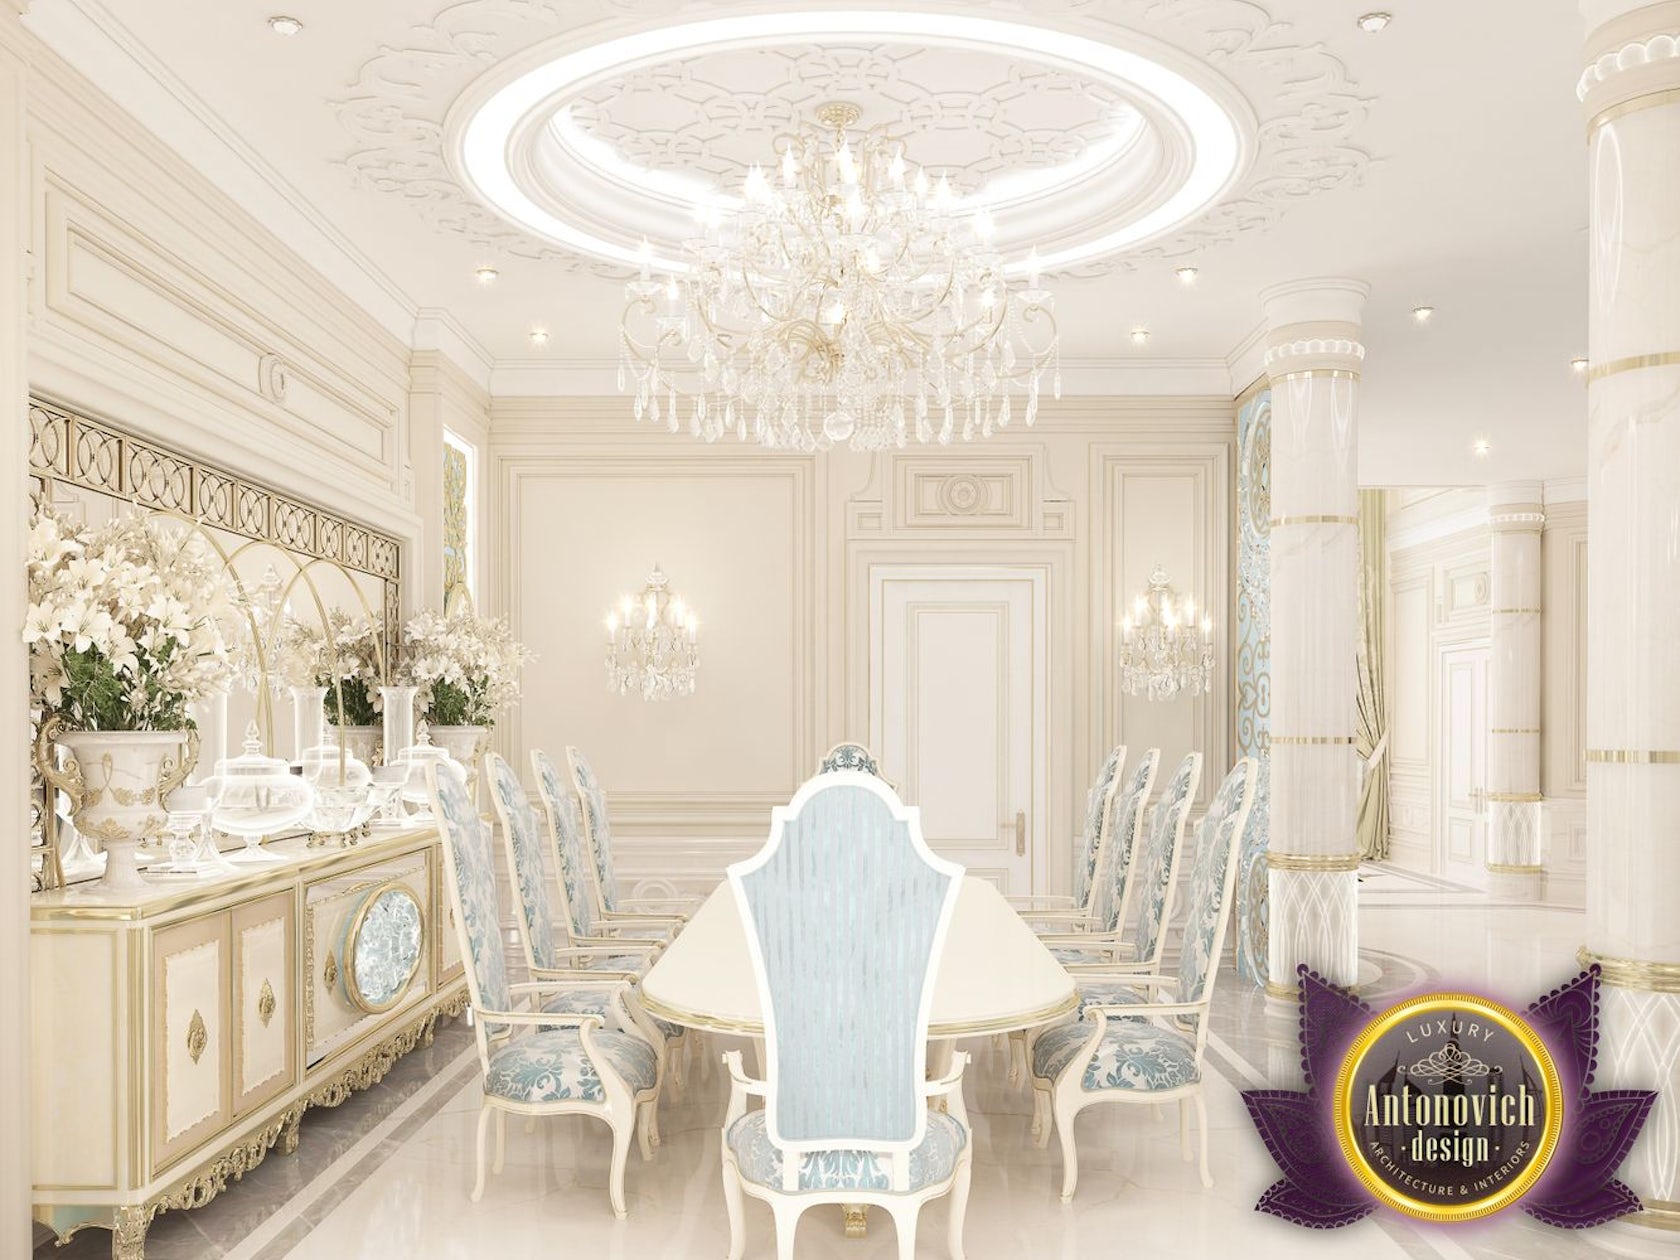 Luxury Interior Villa Design In Uae Of Antonovich Design On